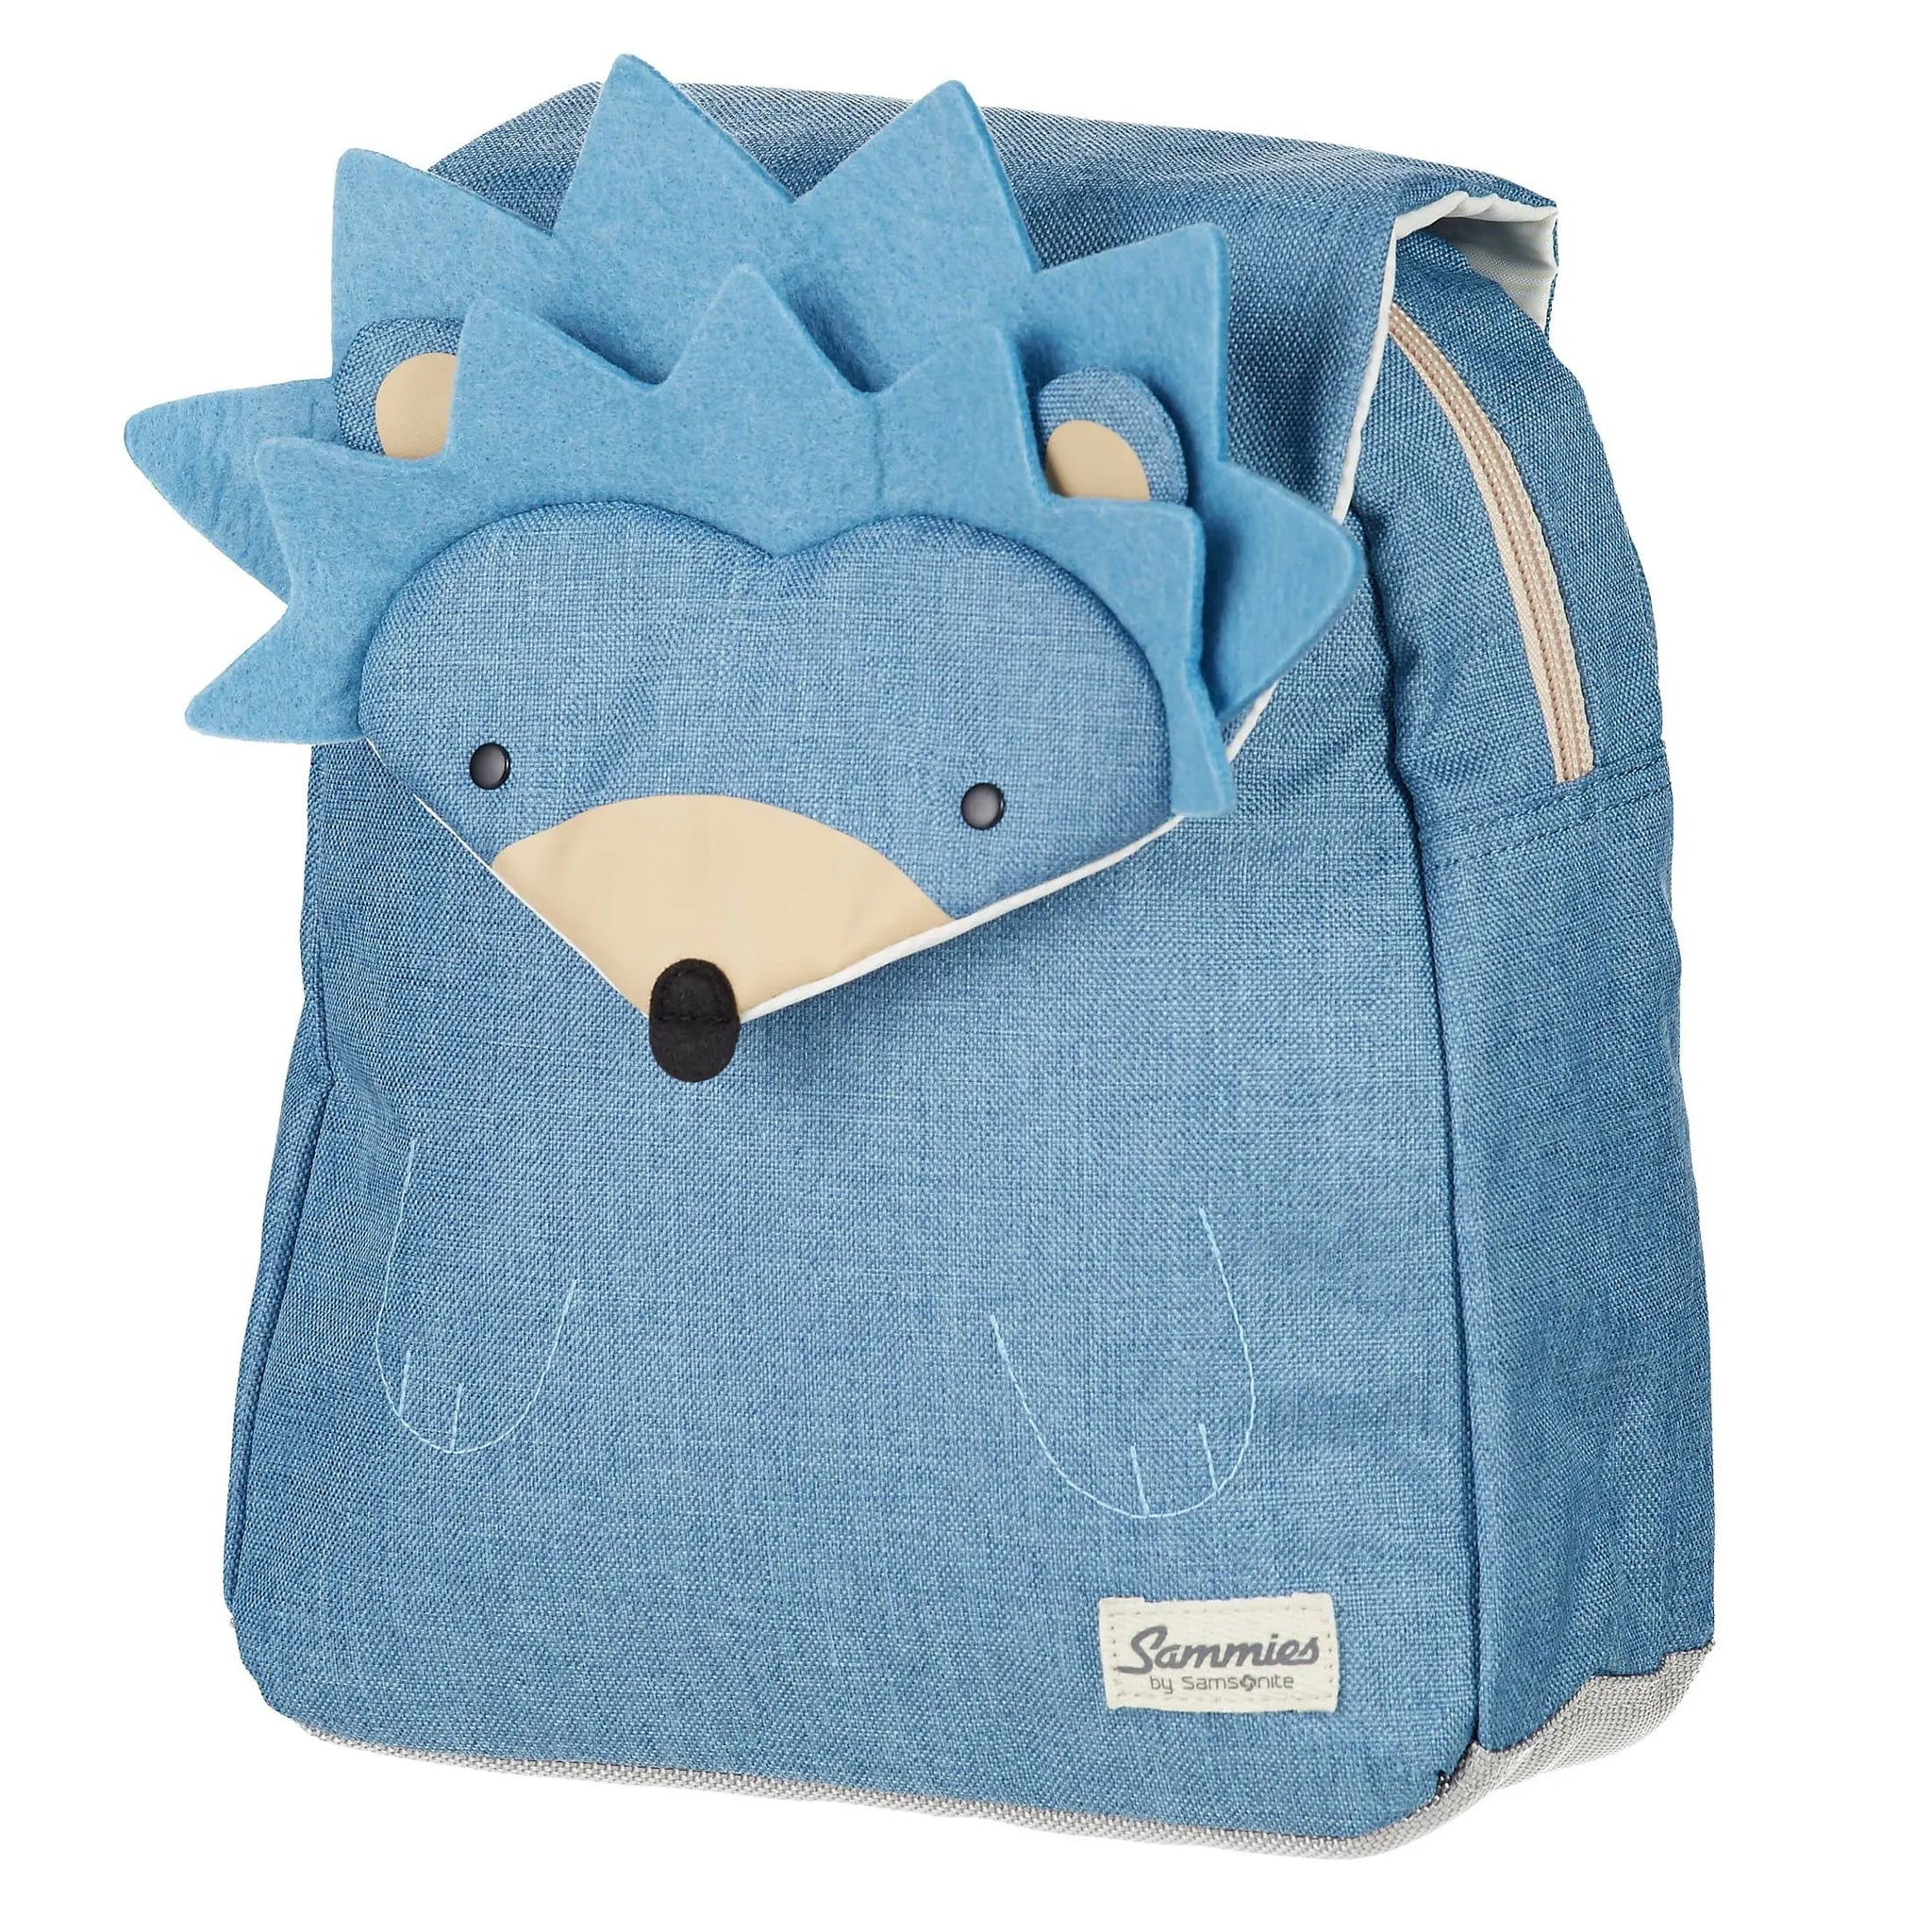 Samsonite harr 34 cm backpack Hedgehog Sammies - Happy hedgehog Harris